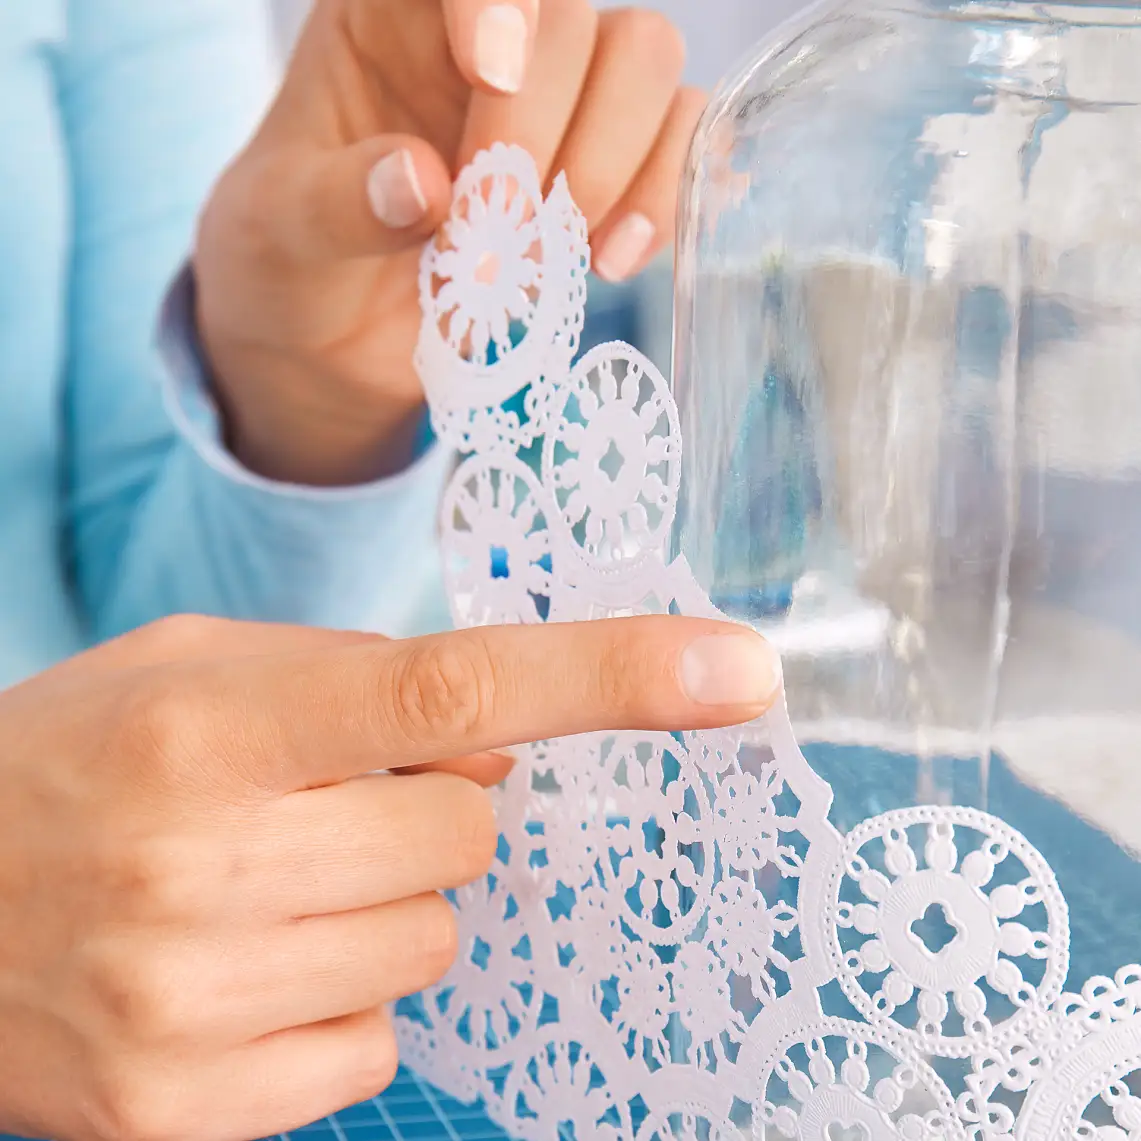 Placer dækkeservietten og lim den fast på glasvasen for at lave din egen gør det selv-vase.